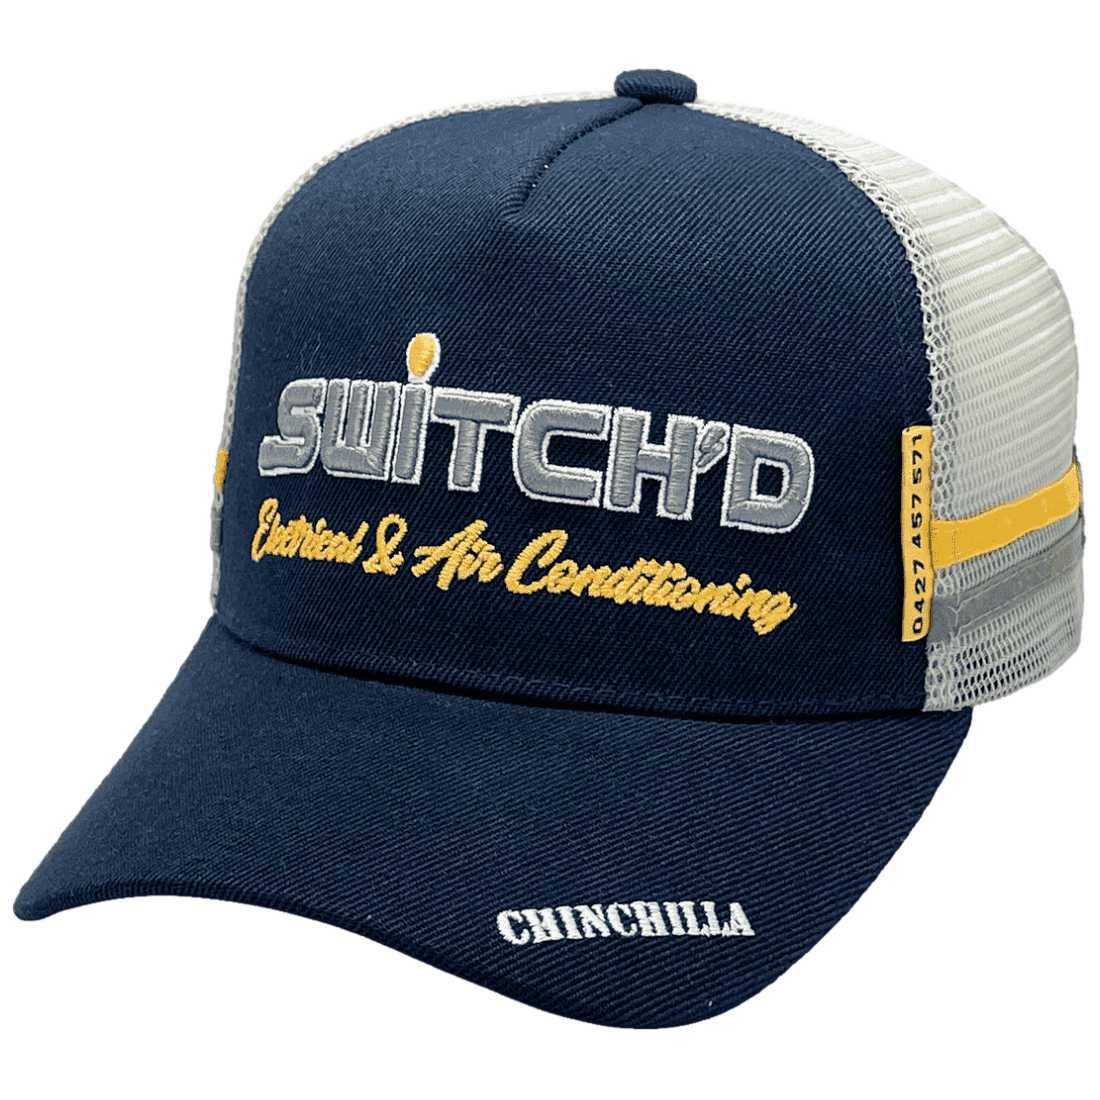 Switch'D Electrical & Air Conditioning Midrange Aussie Trucker Hat - LP